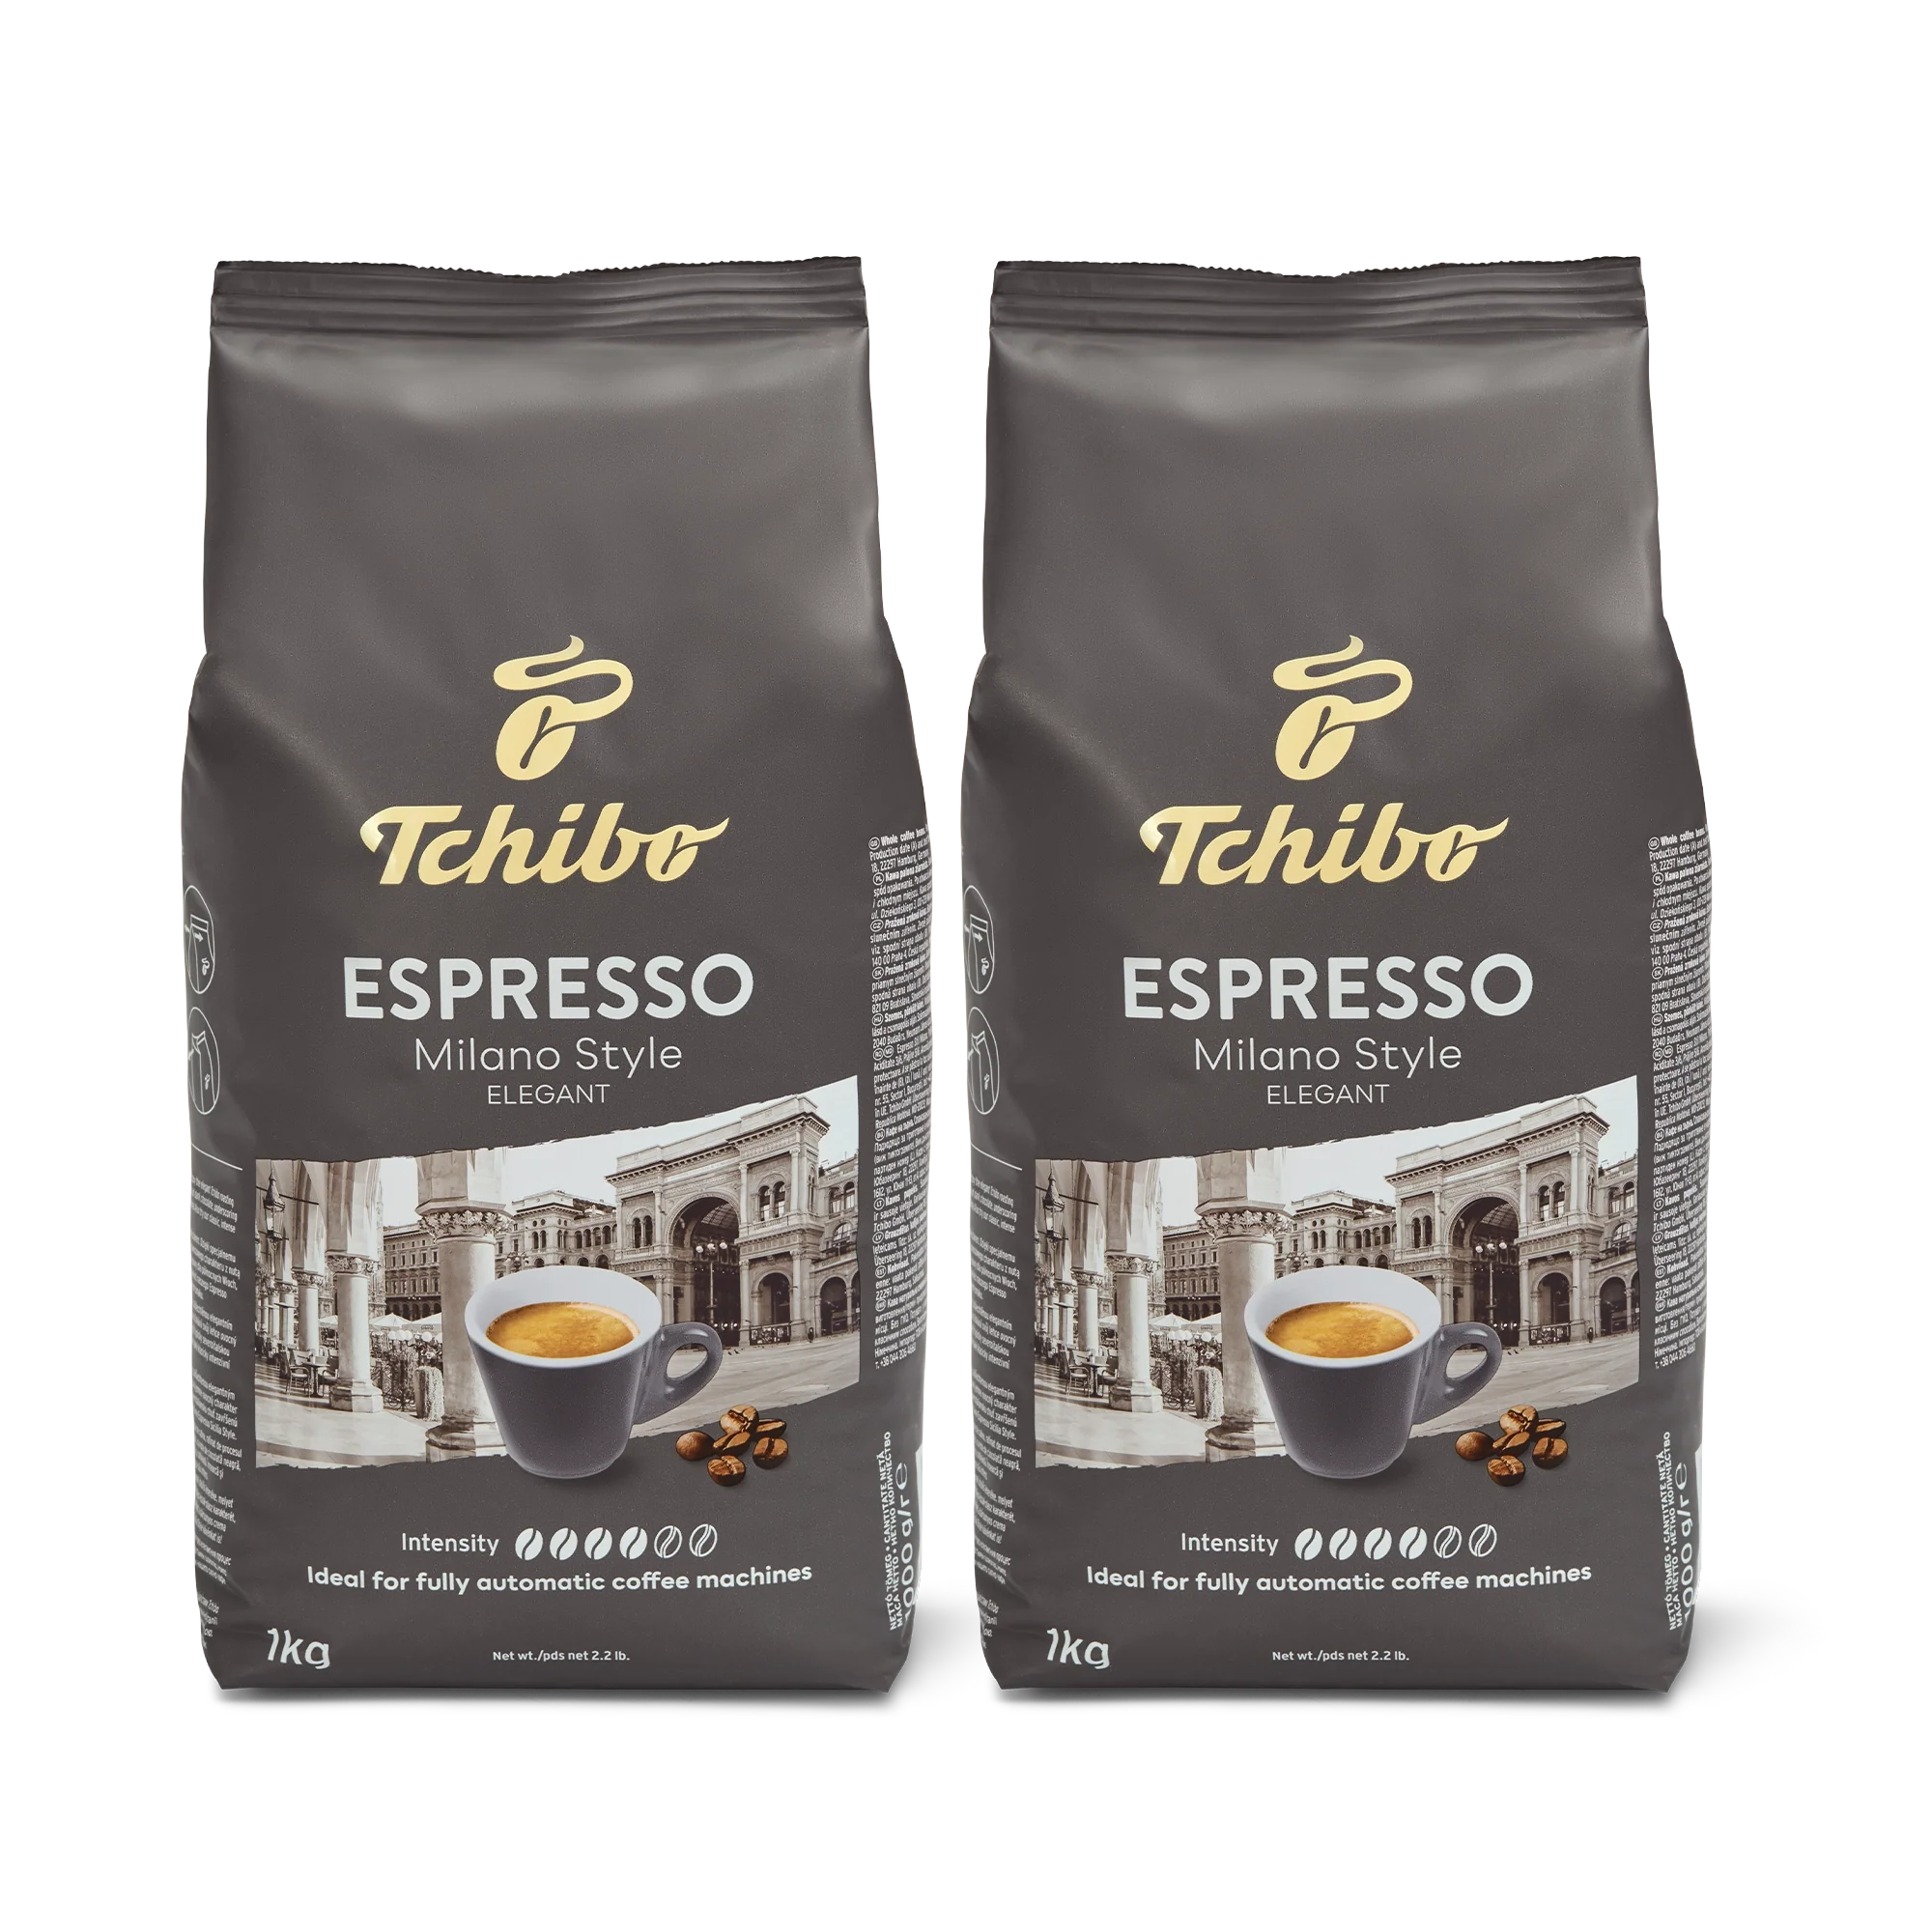 Milano Style Espresso 17.6oz/35.2oz (Subscription)